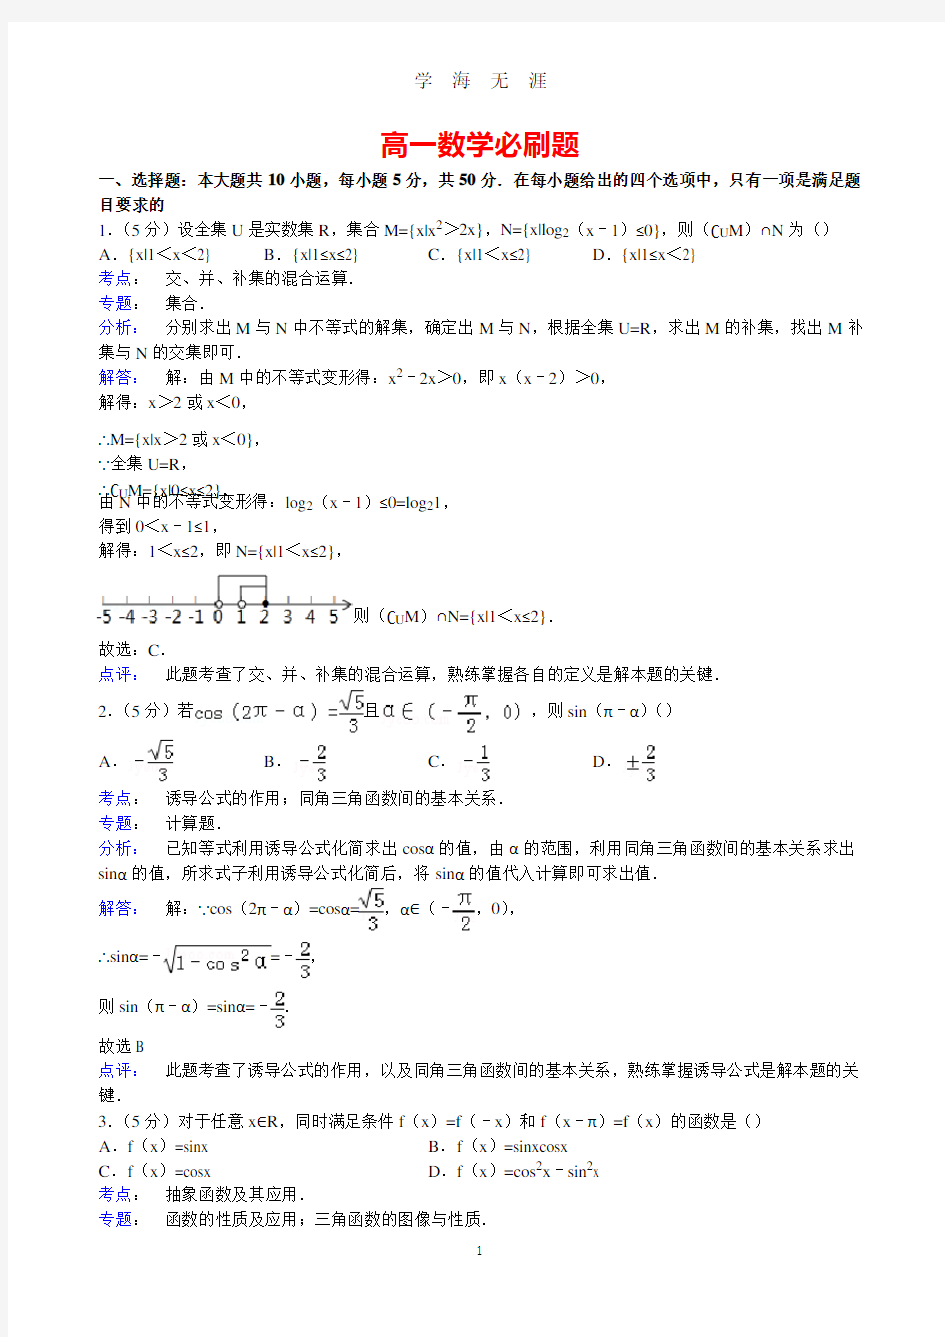 高一数学必刷题(2020年8月整理).pdf